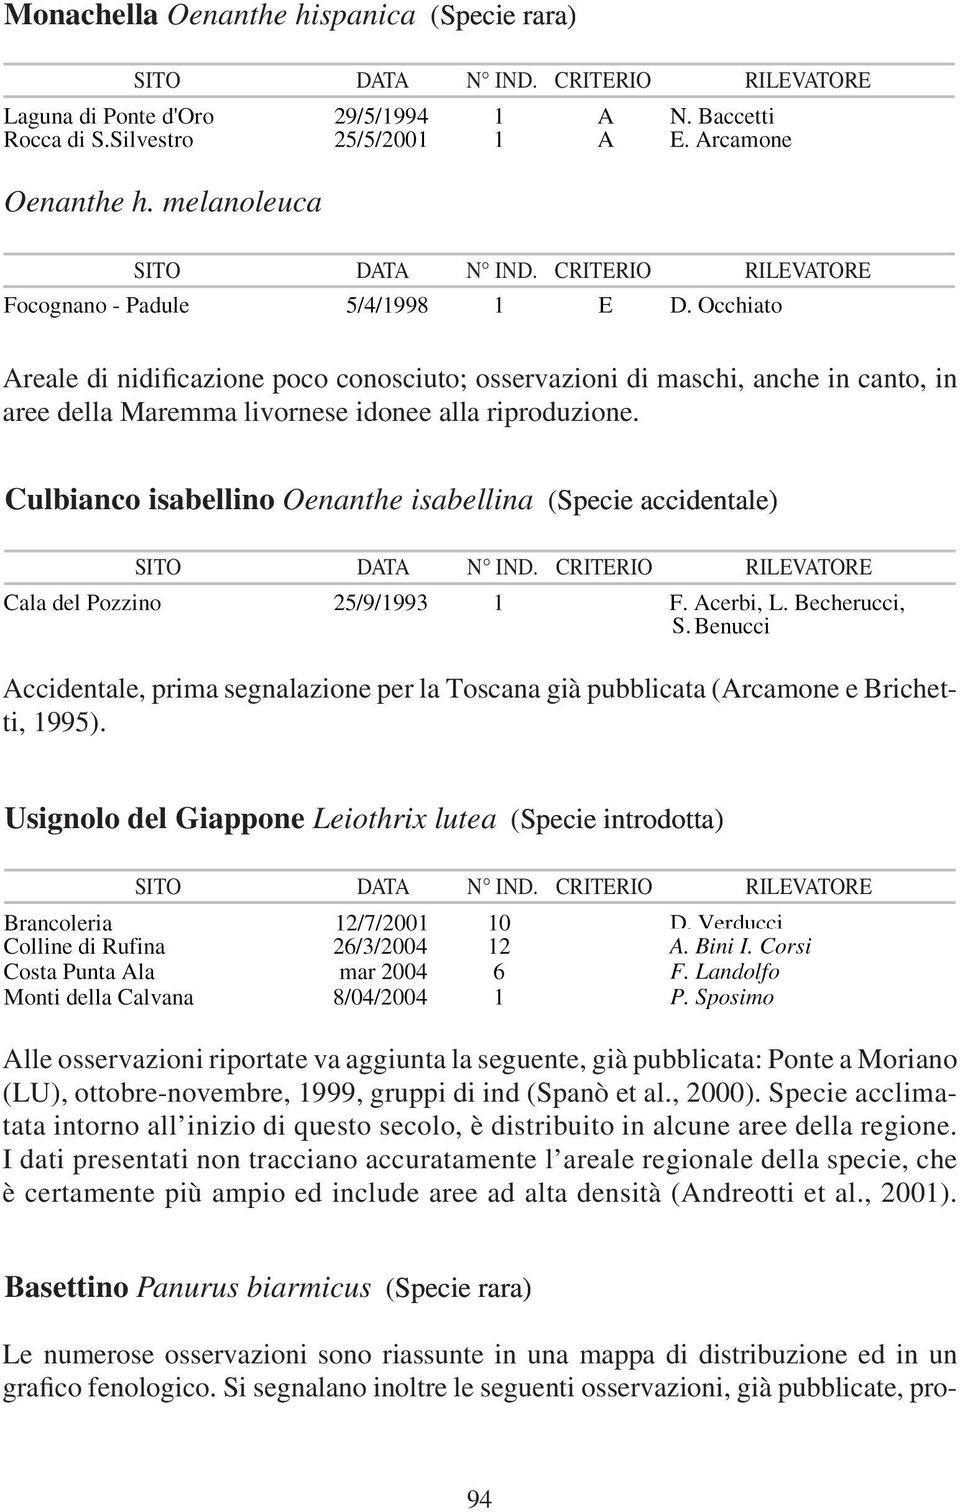 Culbianco isabellino Oenanthe isabellina ( Specie d nt l accidentale) Accidentale, prima segnalazione per la Toscana già pubblicata (Arcamone e Brichetti, 1995).